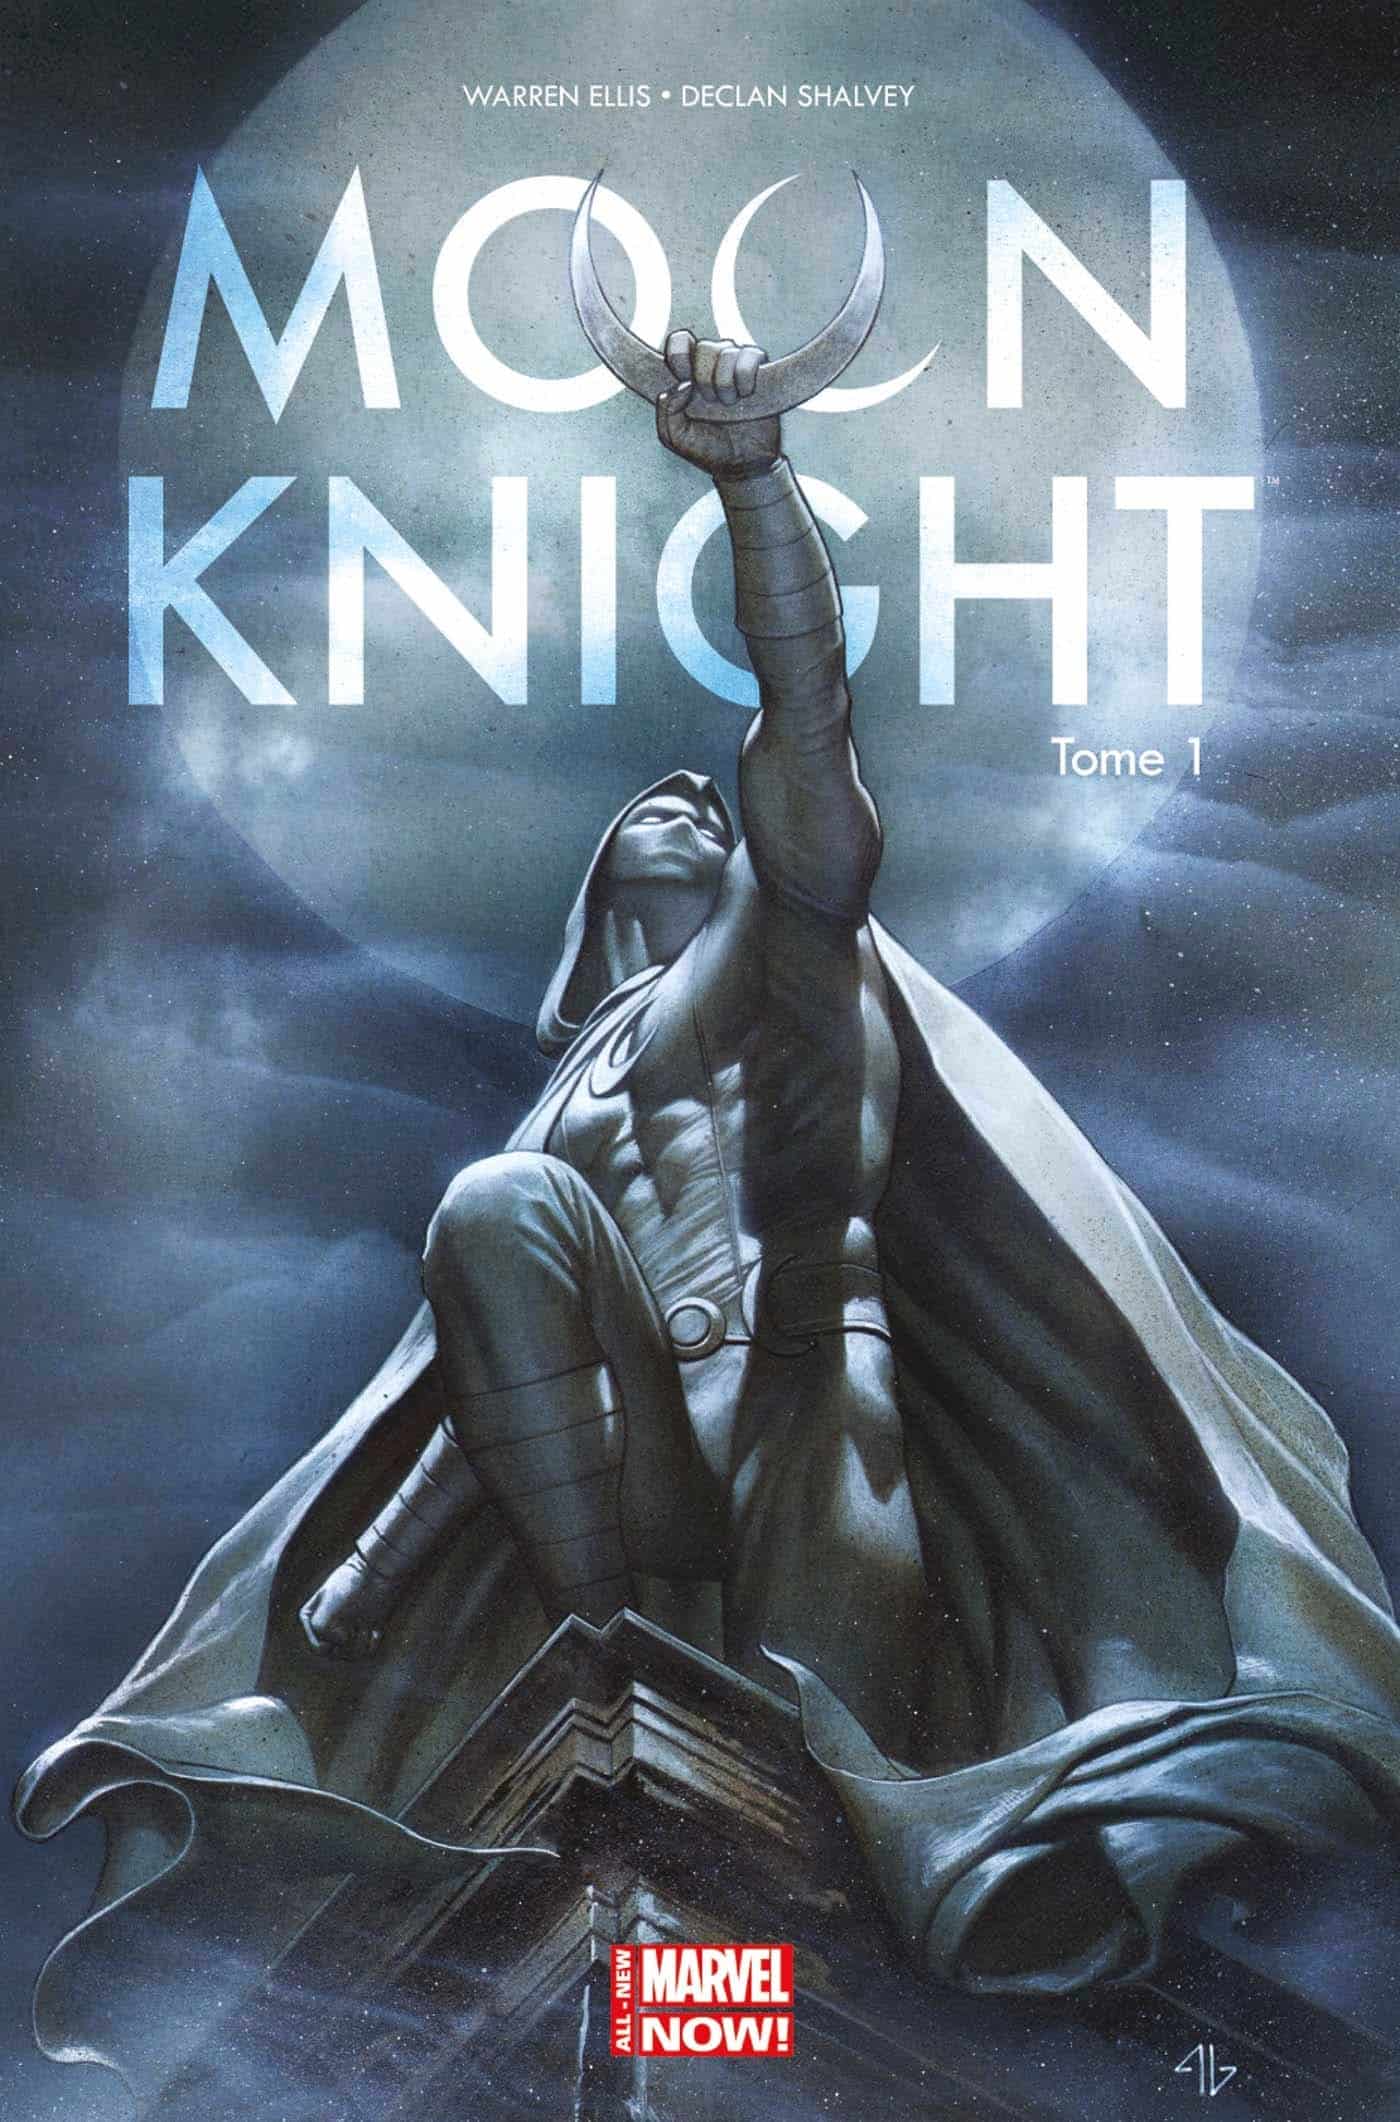 Marvel Superheld Moon Knight kommt als Serien Highlight zu Disney+.